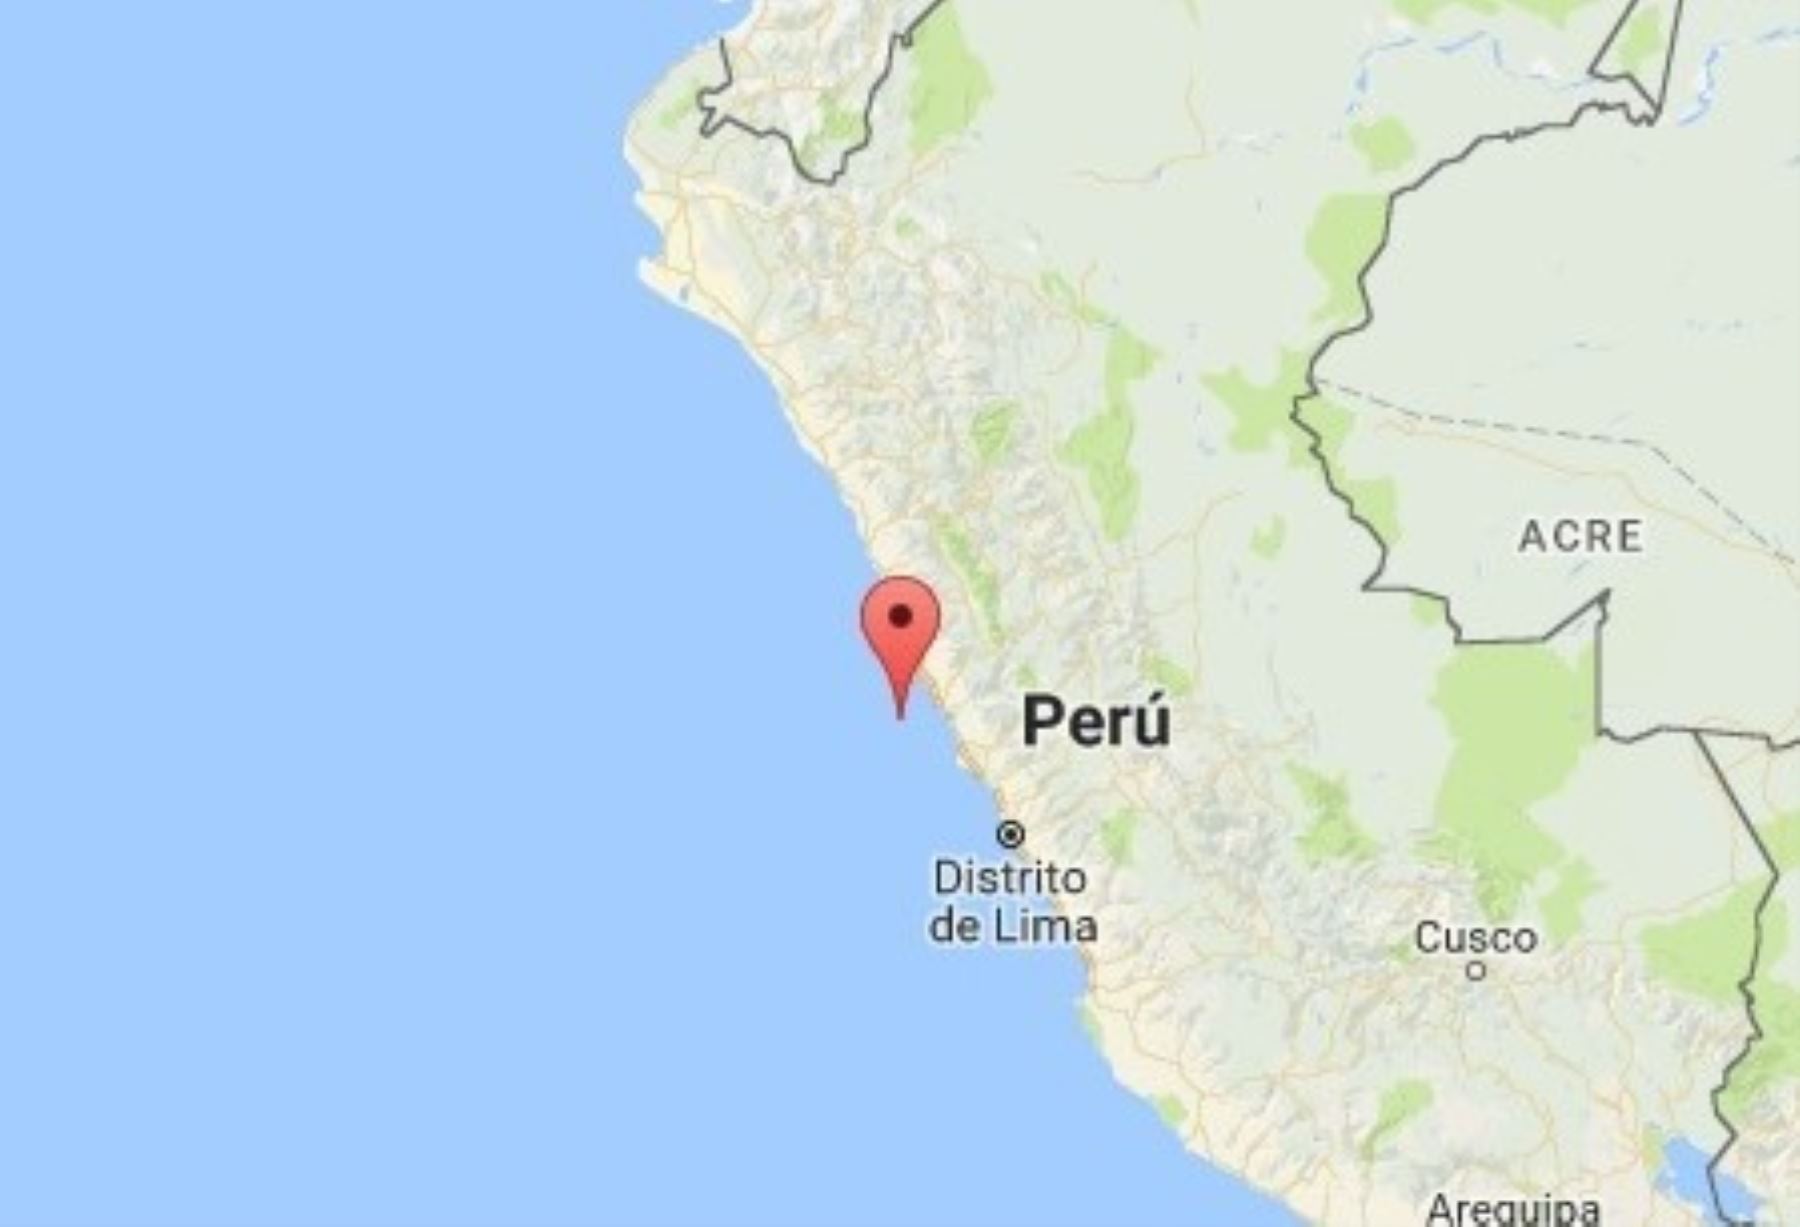 Un sismo de magnitud 4.4 remeció esta tarde la provincia de Barranca, la más septentrional de la costa norte de la región Lima, informó el Instituto Geofísico del Perú (IGP). ANDINA/Difusión